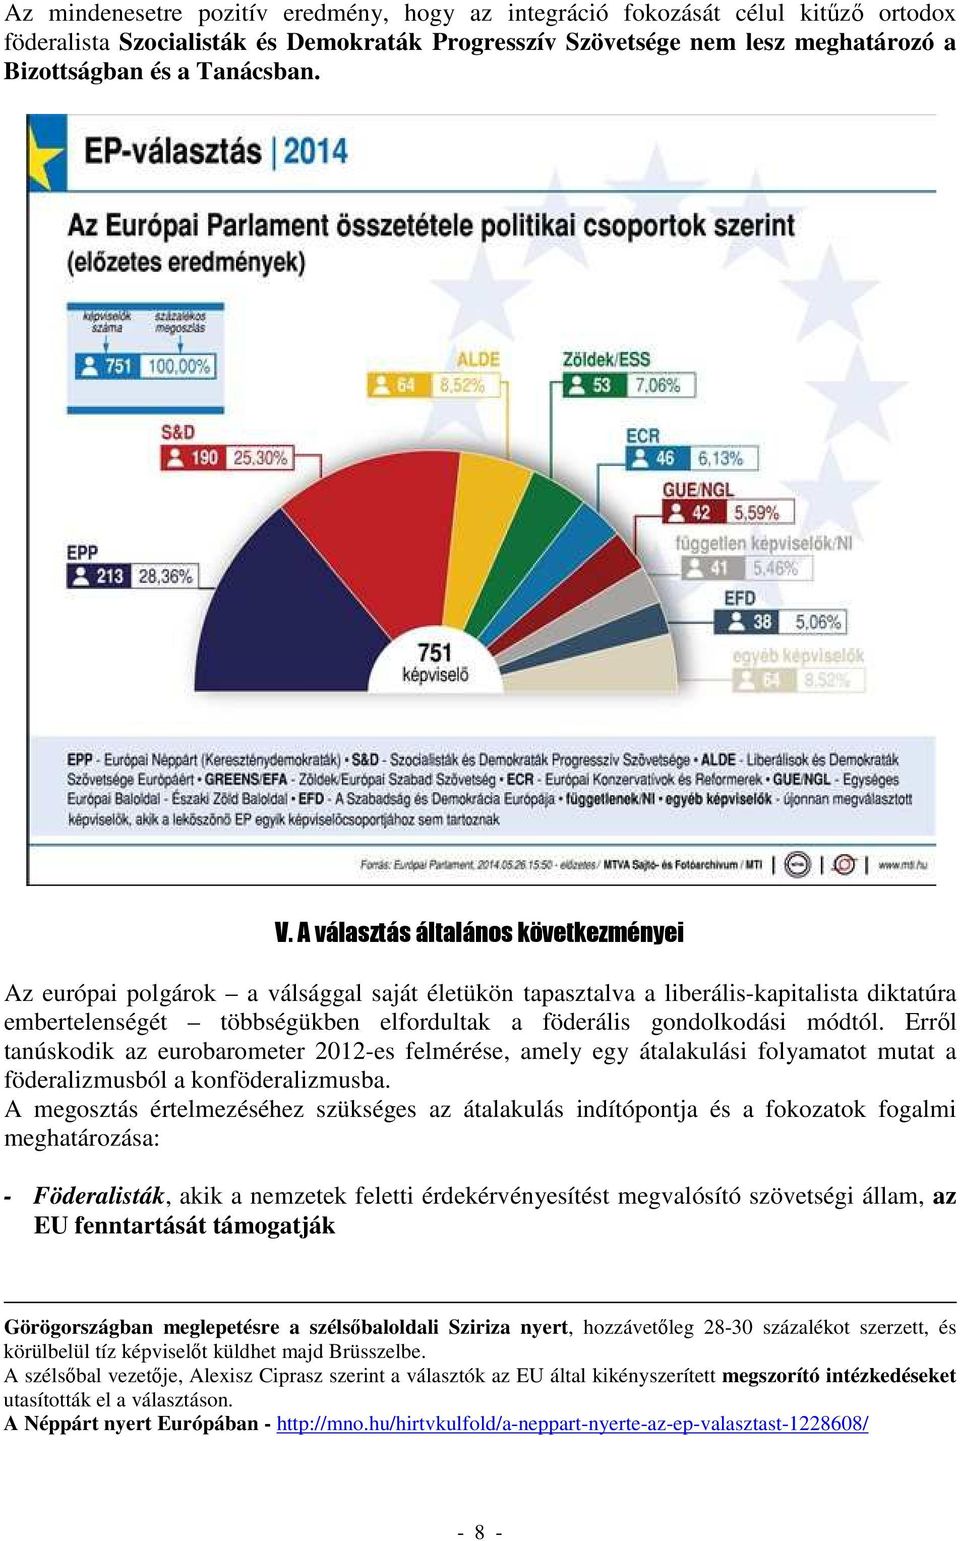 módtól. Erről tanúskodik az eurobarometer 2012-es felmérése, amely egy átalakulási folyamatot mutat a föderalizmusból a konföderalizmusba.